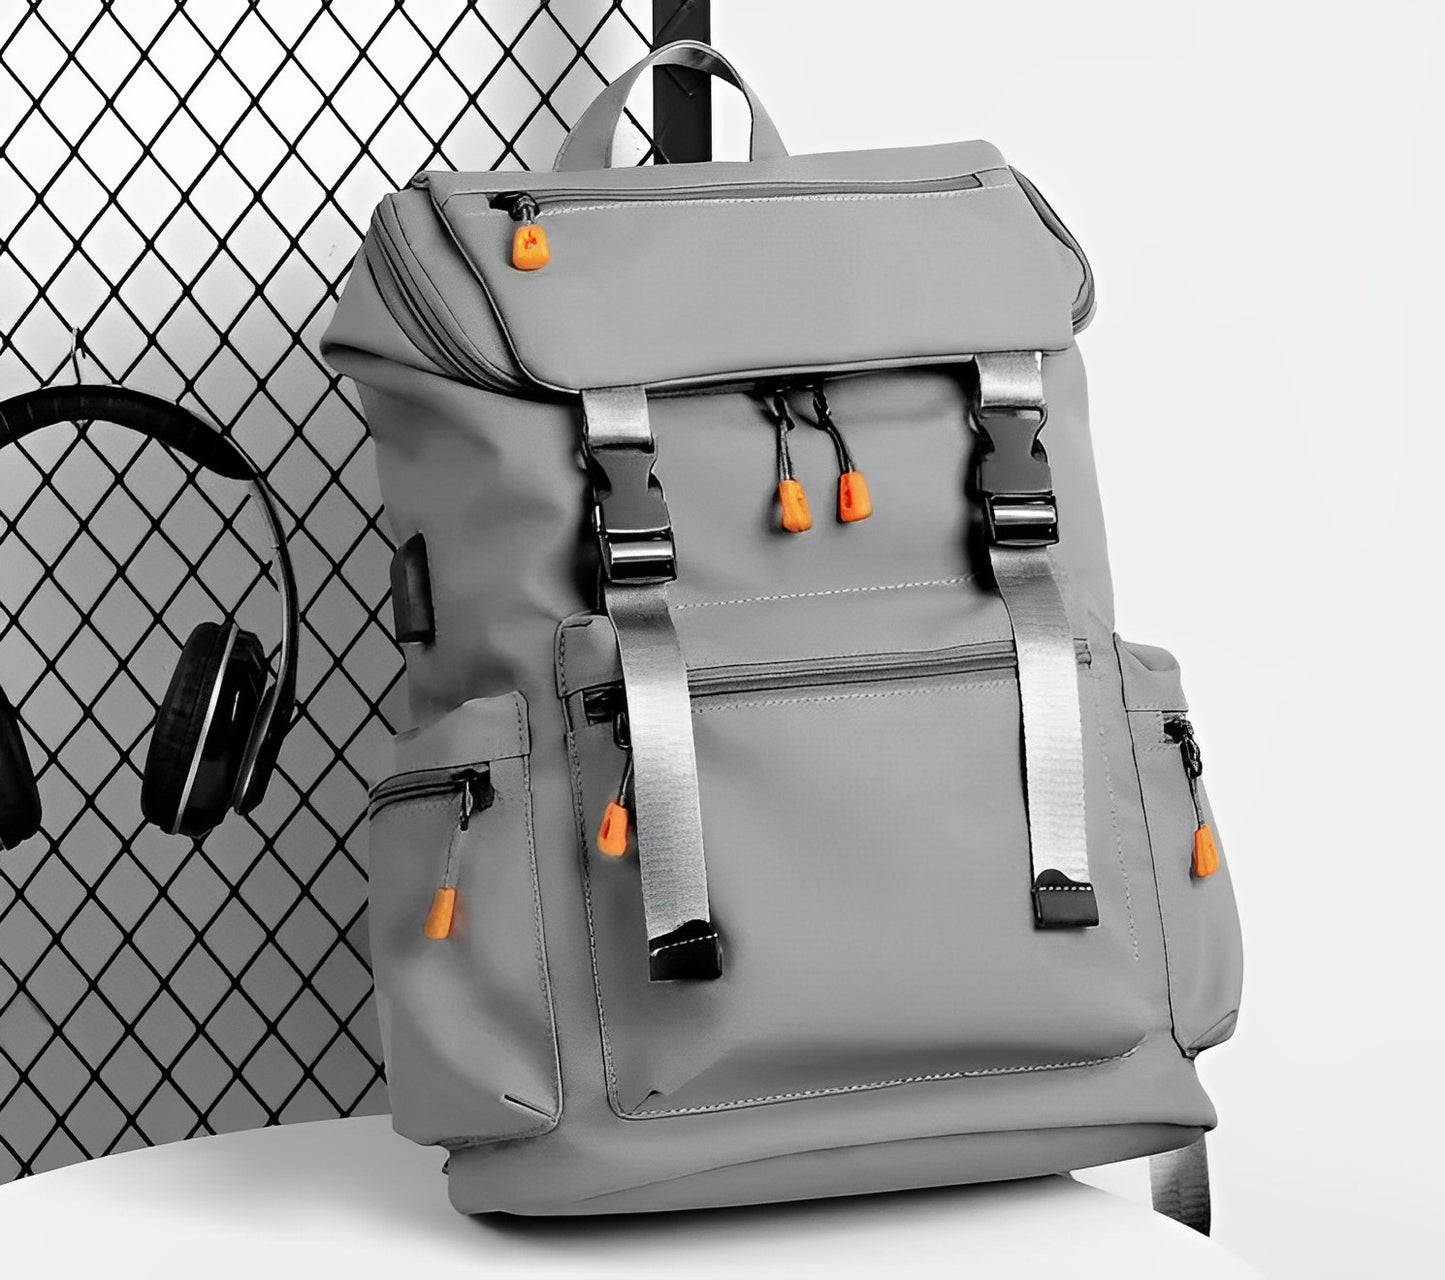 Bagzy AeroPack Pro: A Functional Backpack - BagzyBag